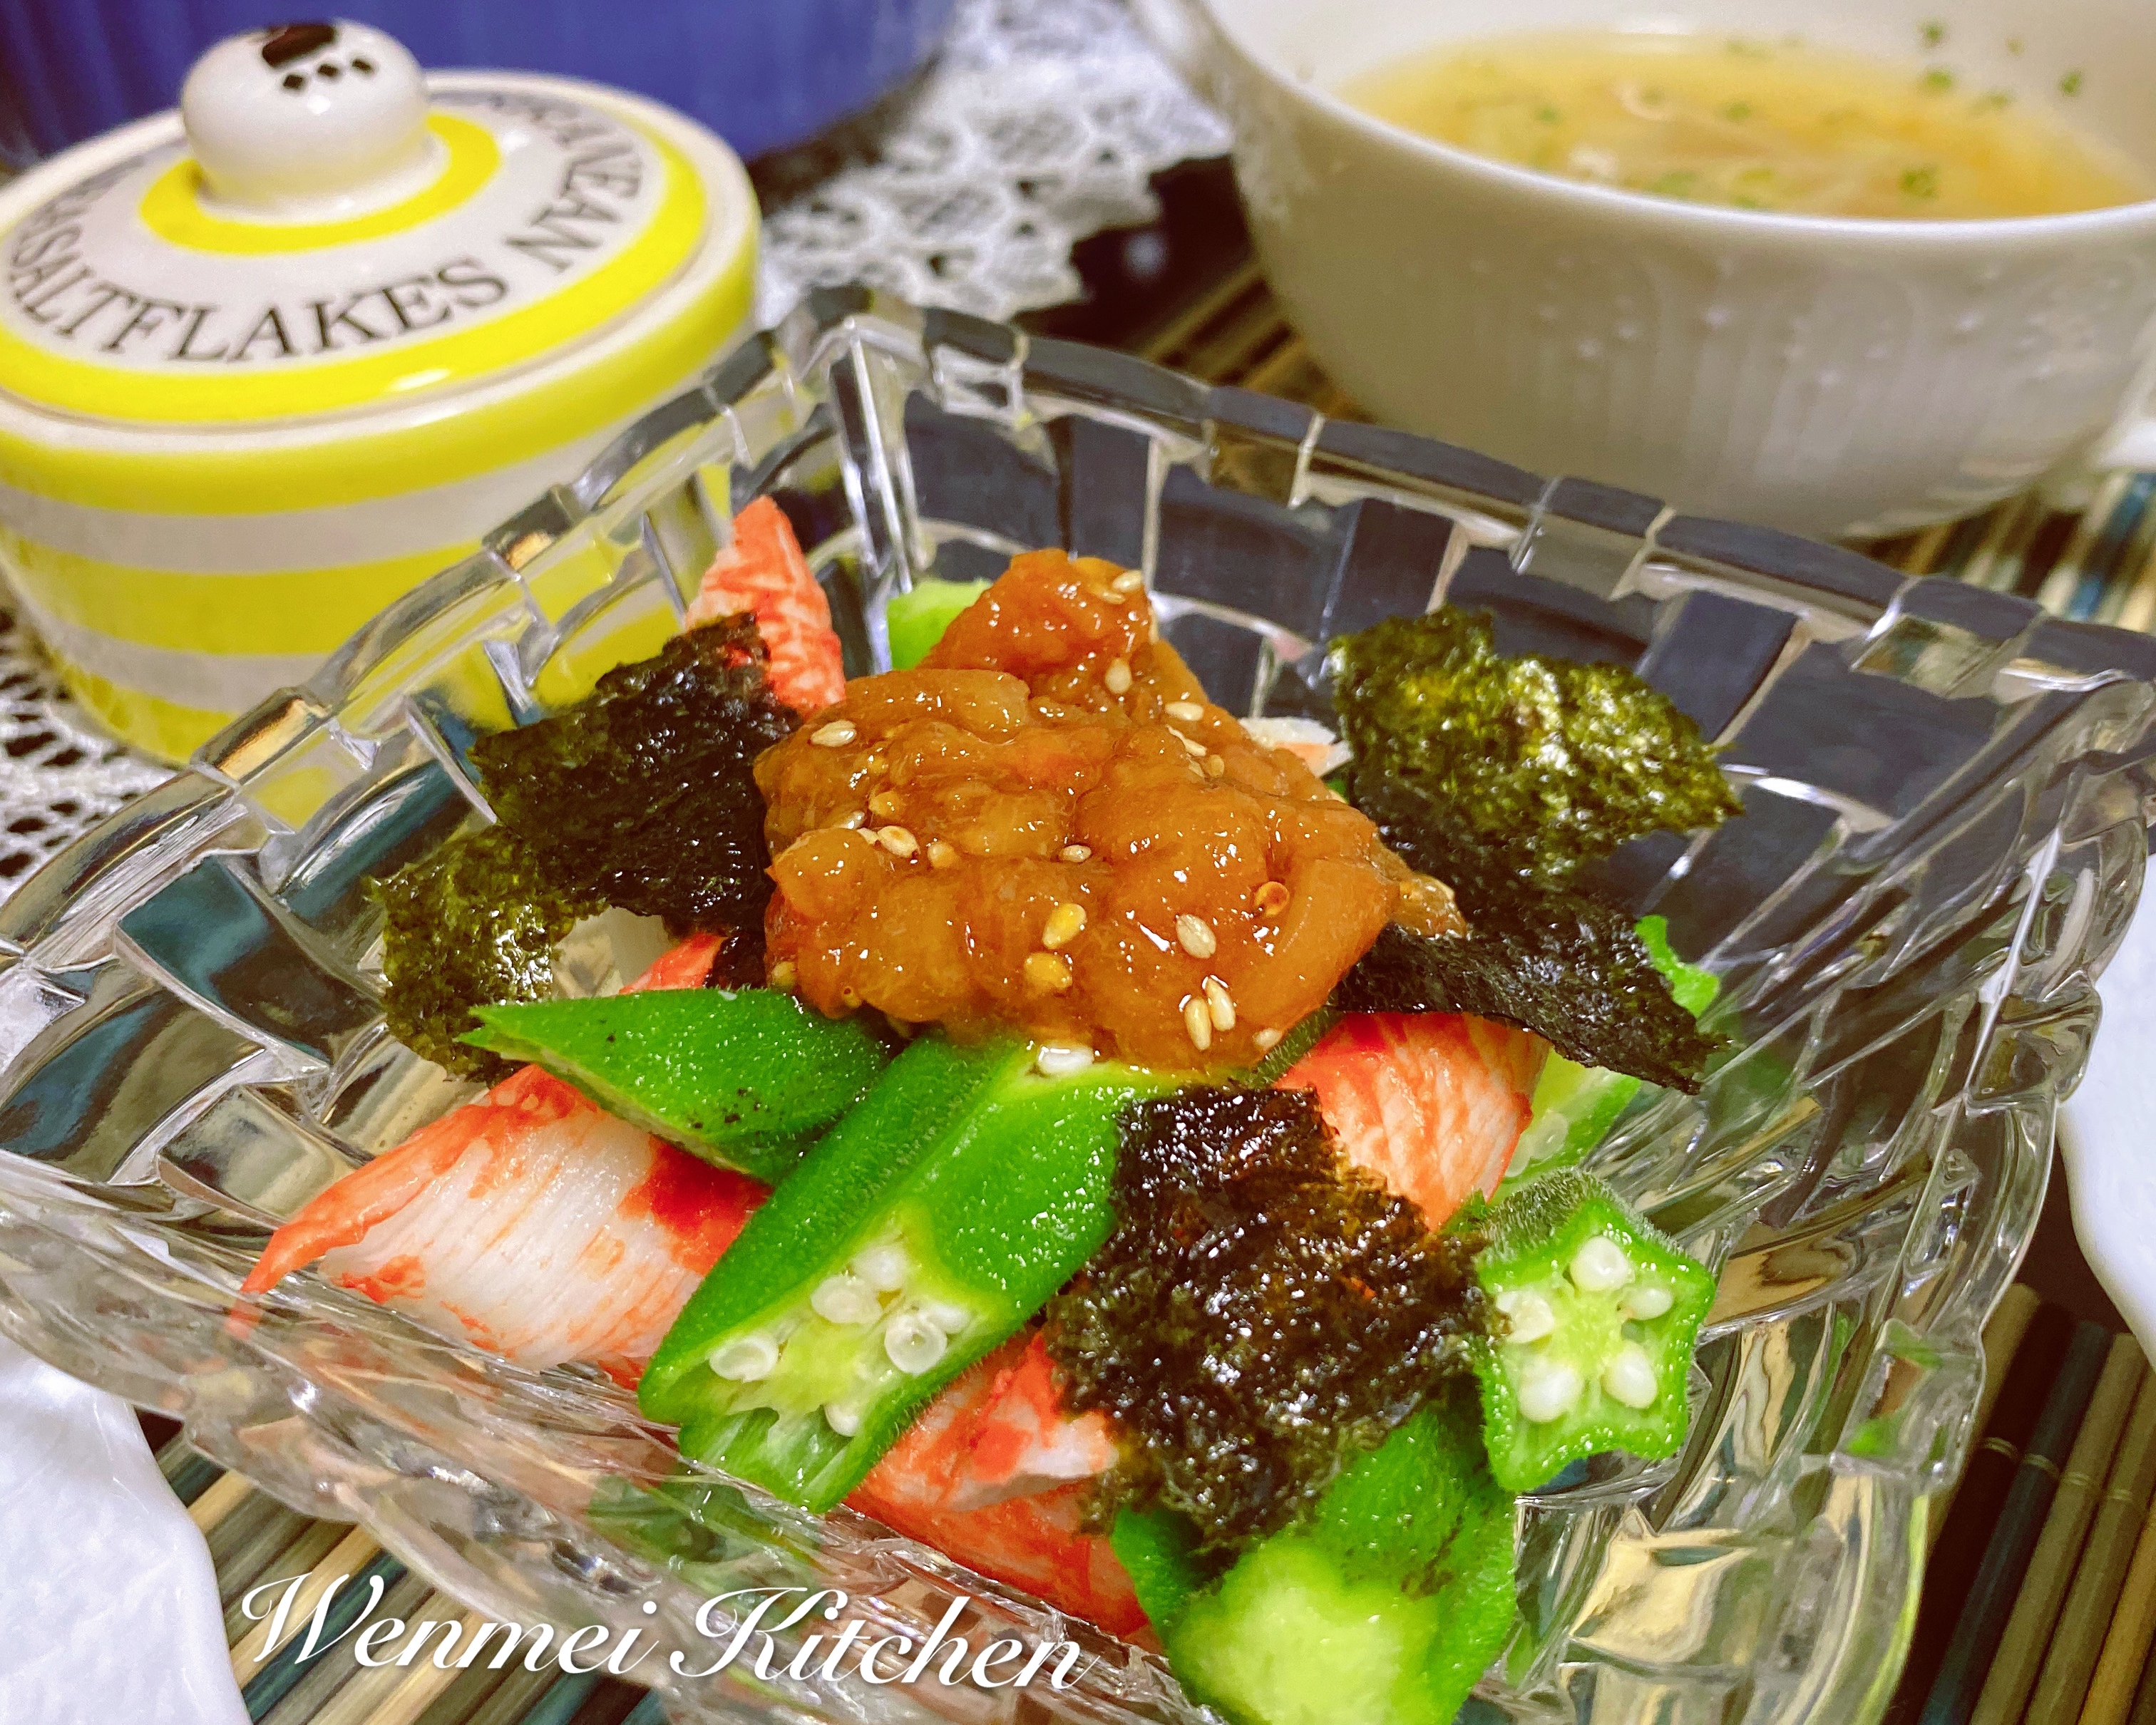 日式小菜梅子海苔拌秋葵的做法步骤图 文美厨房 下厨房